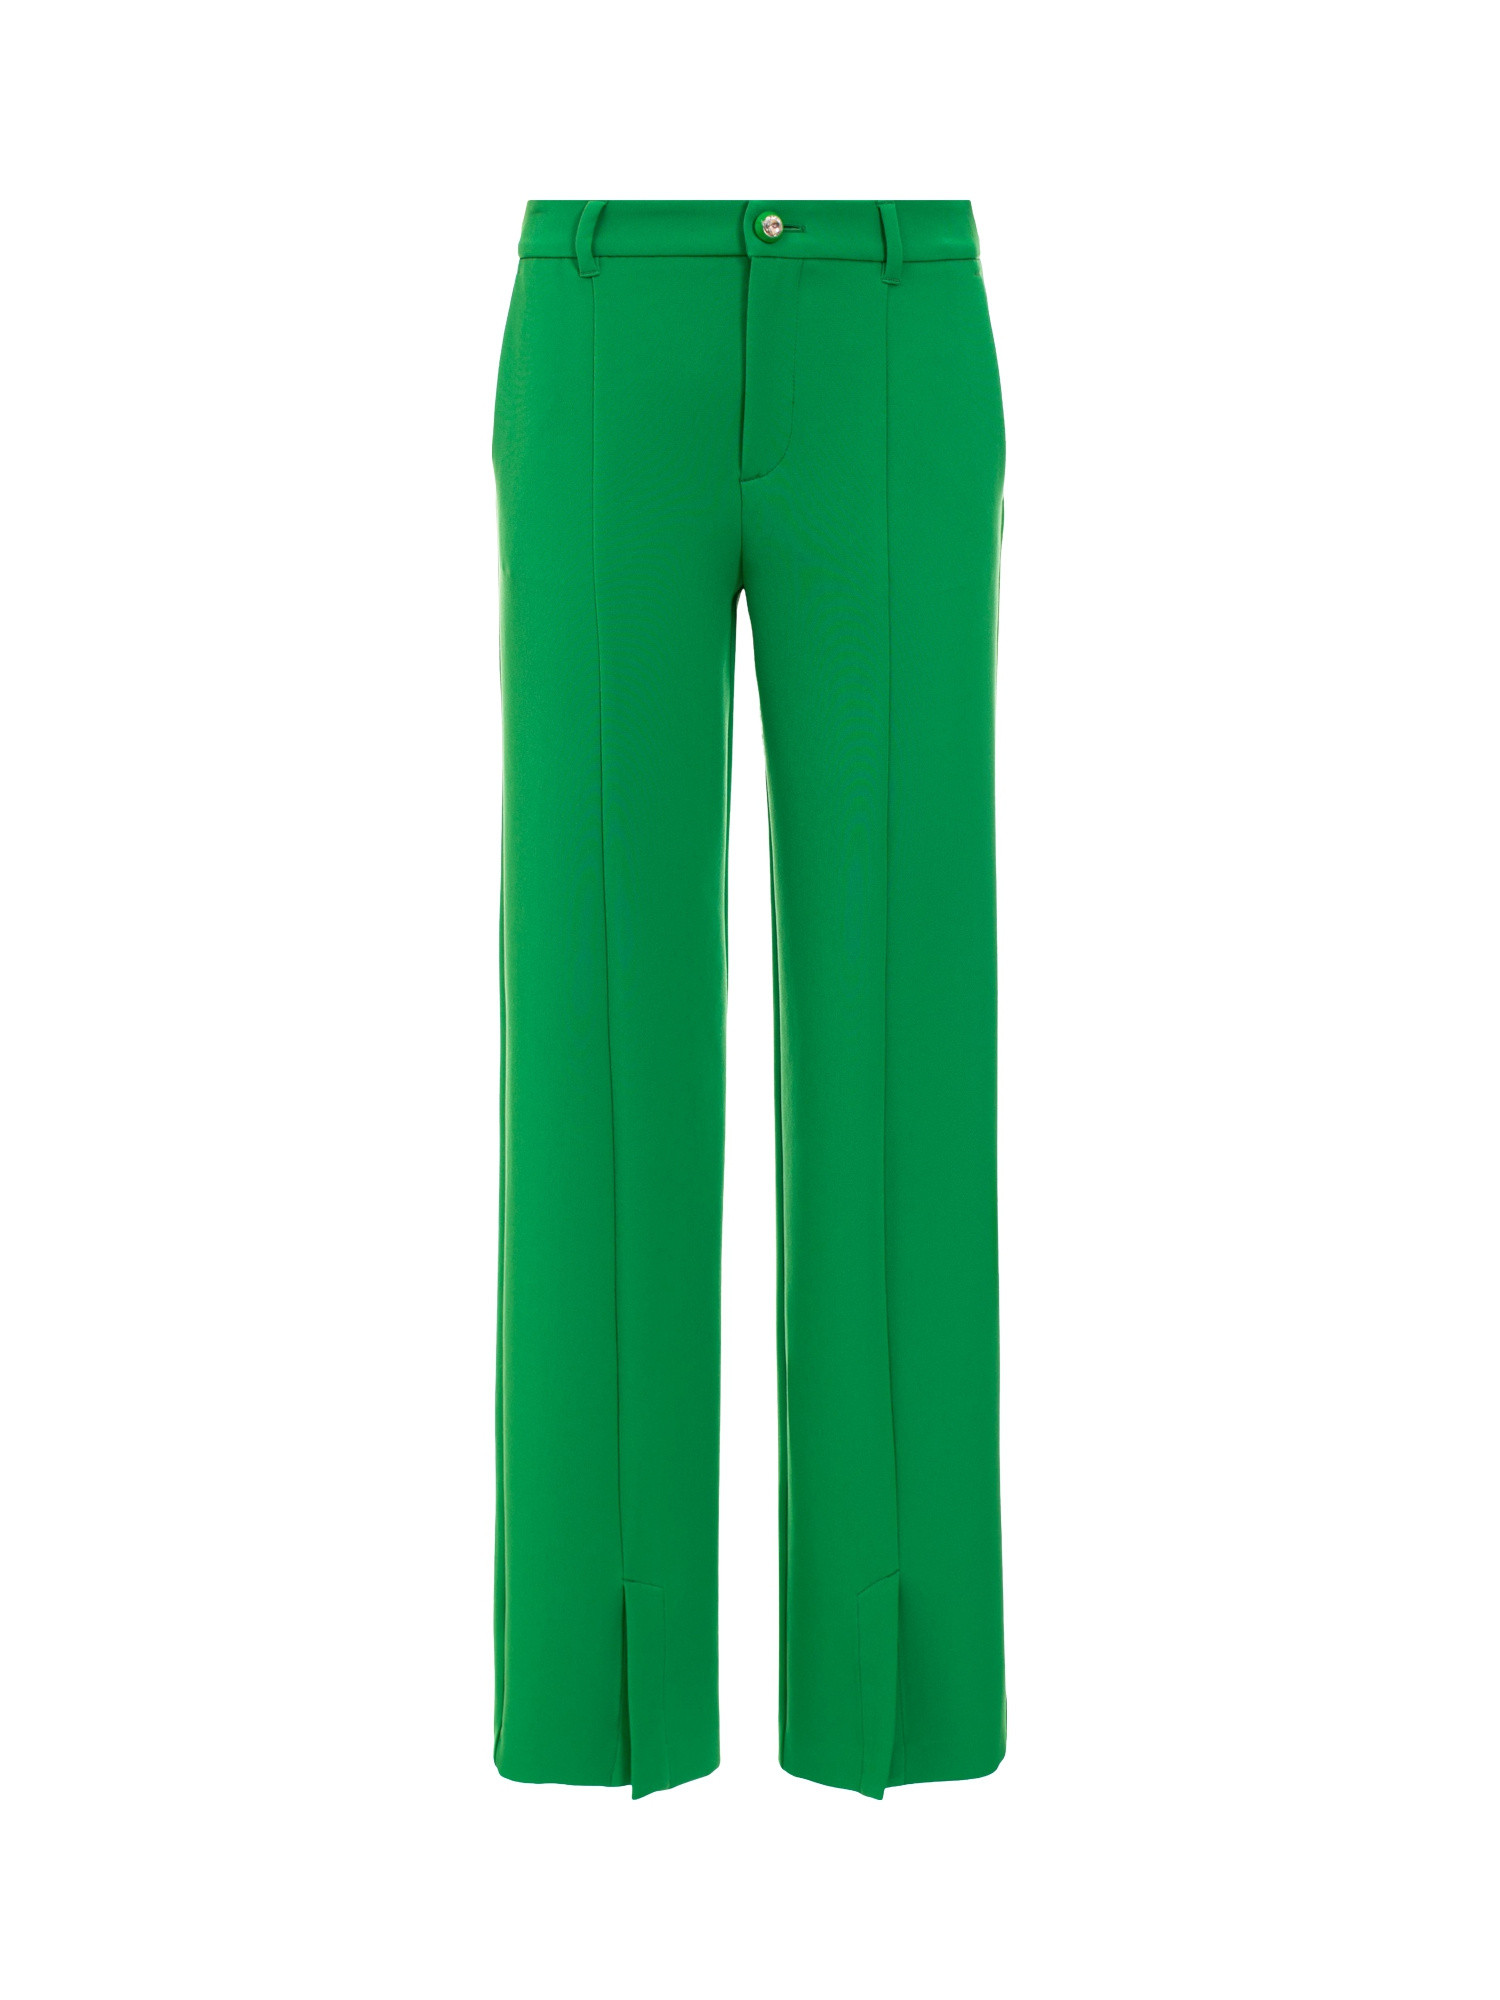 Chiara Ferragni - Pantalone in cady bistretch, bottone gioiello e spacco in centro davanti, linea morbida, Verde, large image number 0